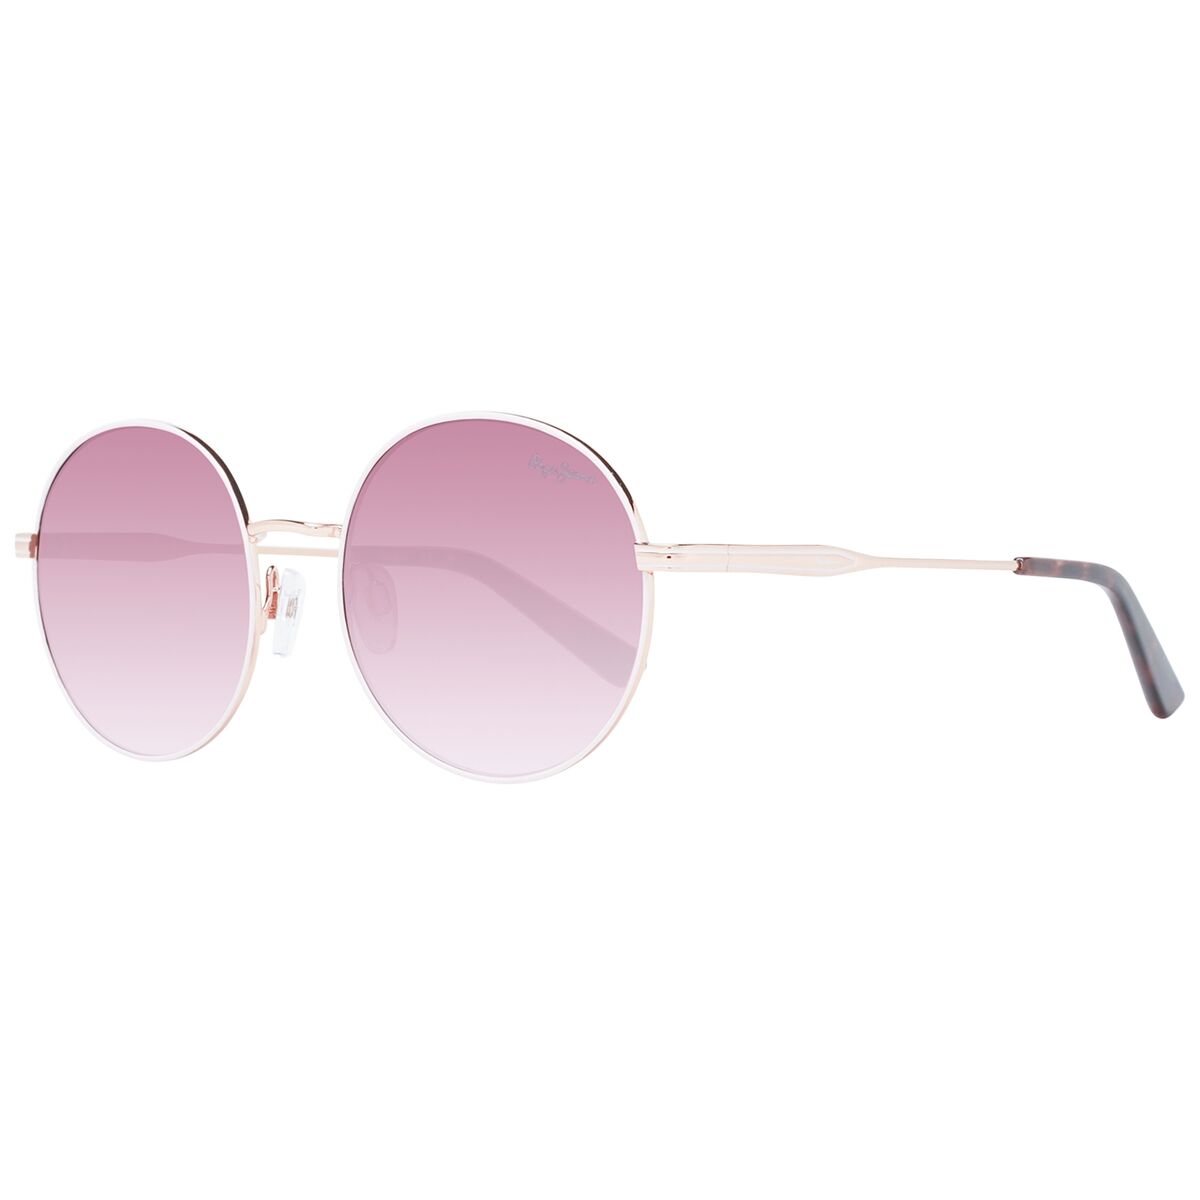 Ladies' Sunglasses Pepe Jeans PJ5196 53470